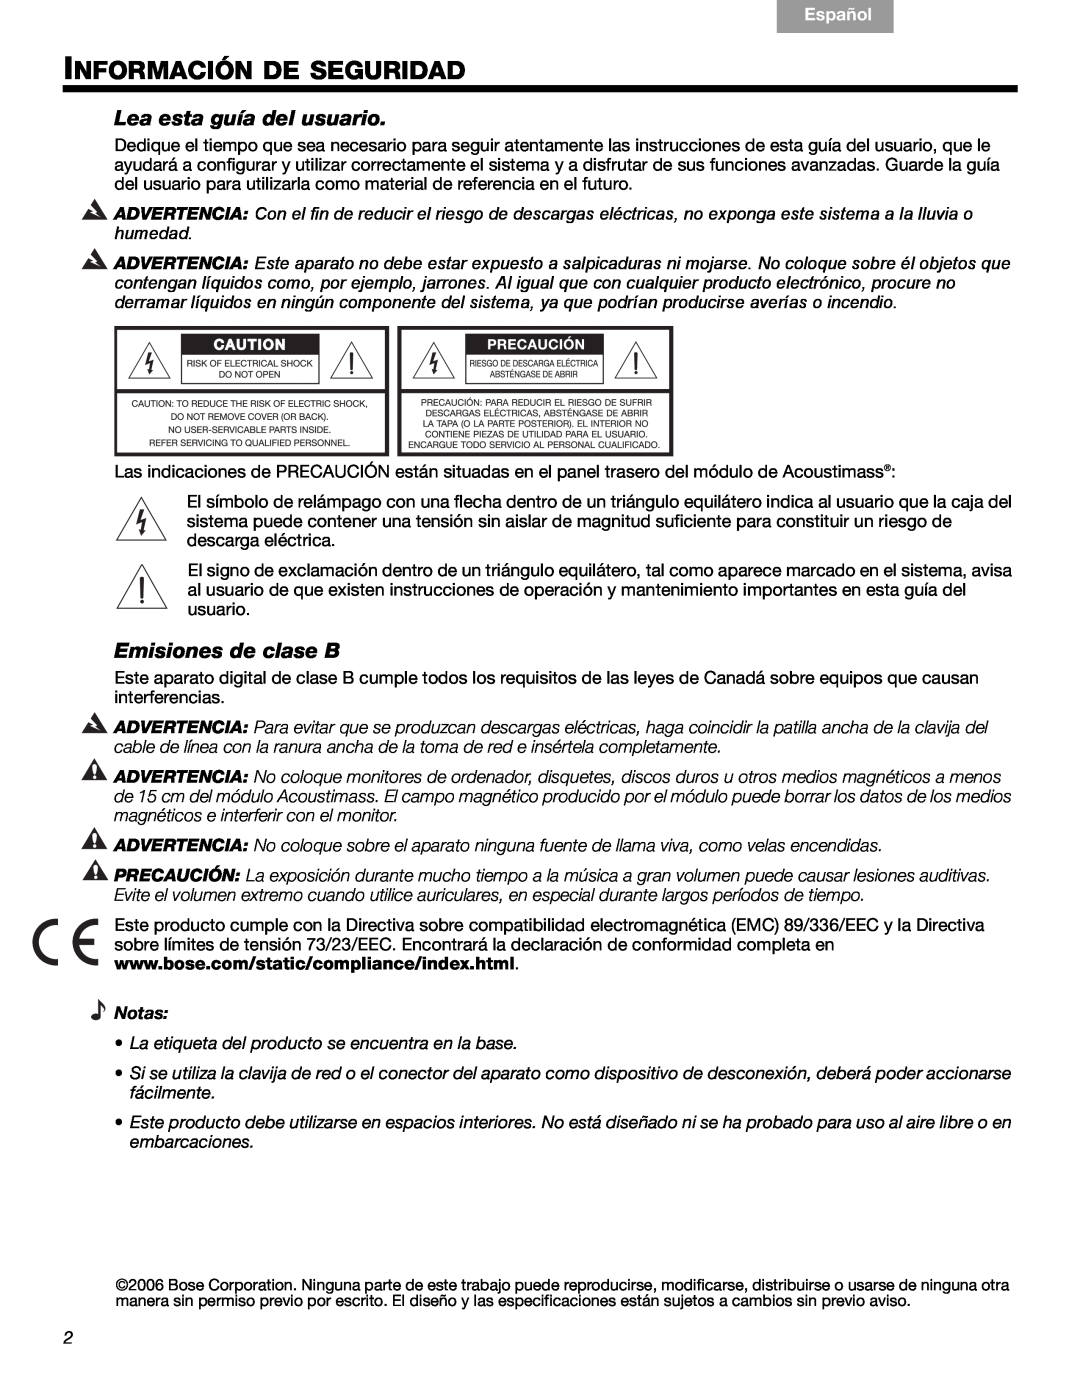 Bose 3 manual Información De Seguridad, Lea esta guía del usuario, Emisiones de clase B, Notas, Français, Español, English 